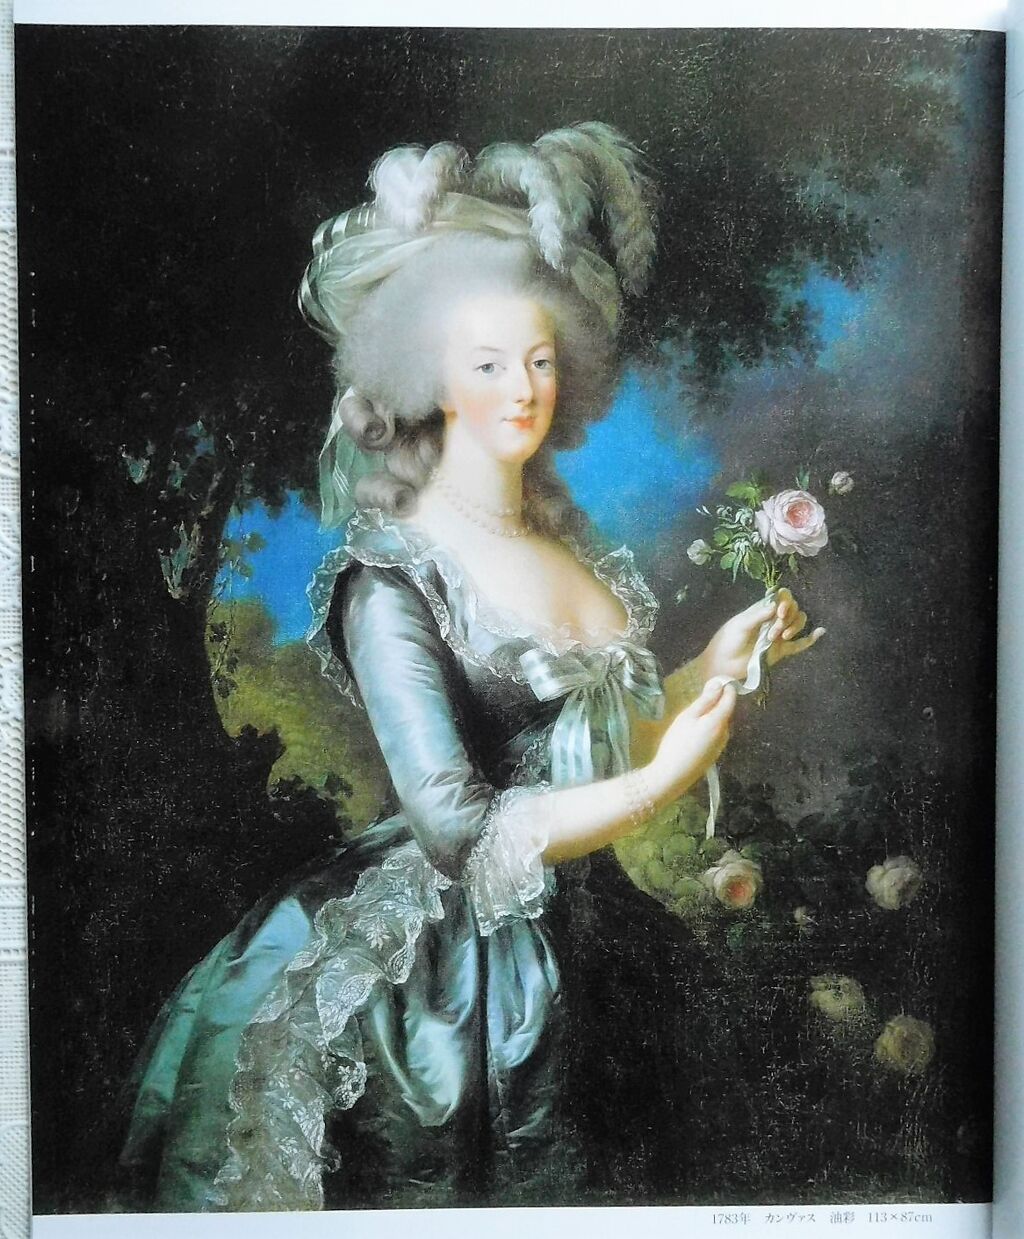 バラを持つマリー アントワネット ヴェルサイユ宮殿とアメリカ サロン マリー アントワネット